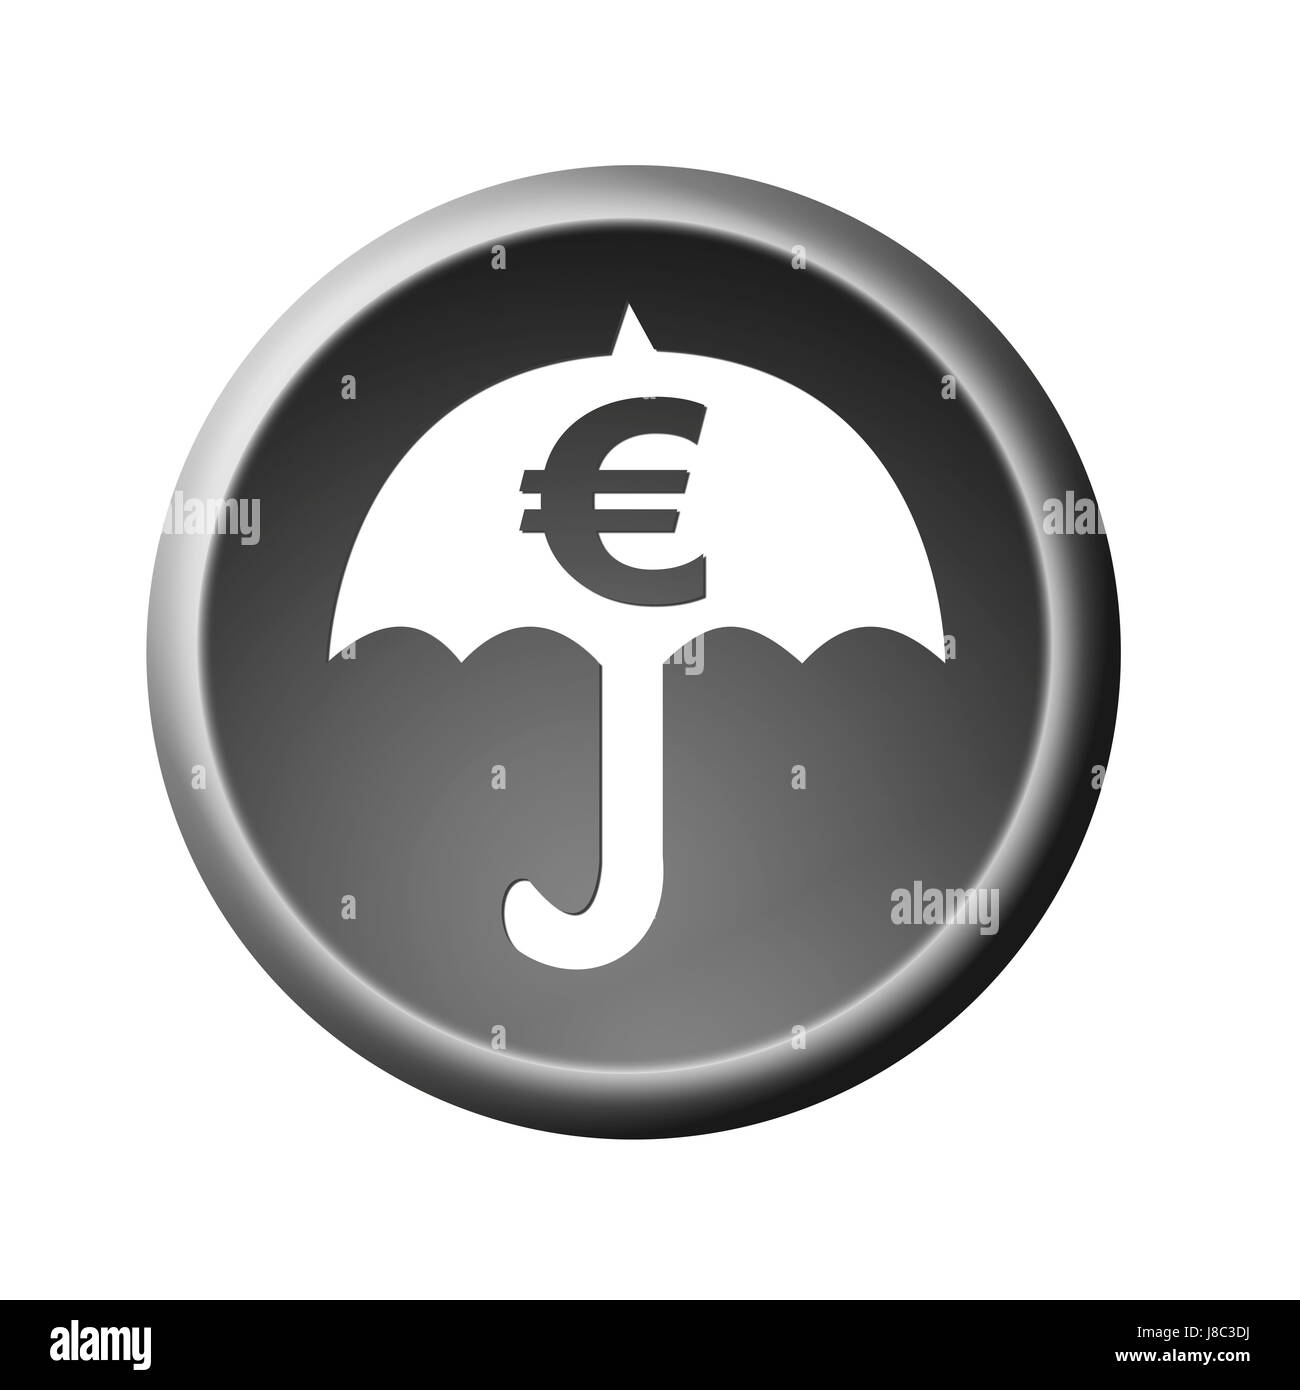 Euro, crisi, pulsante, ombrello, Rescue, crisi economica, crisi finanziaria, Foto Stock